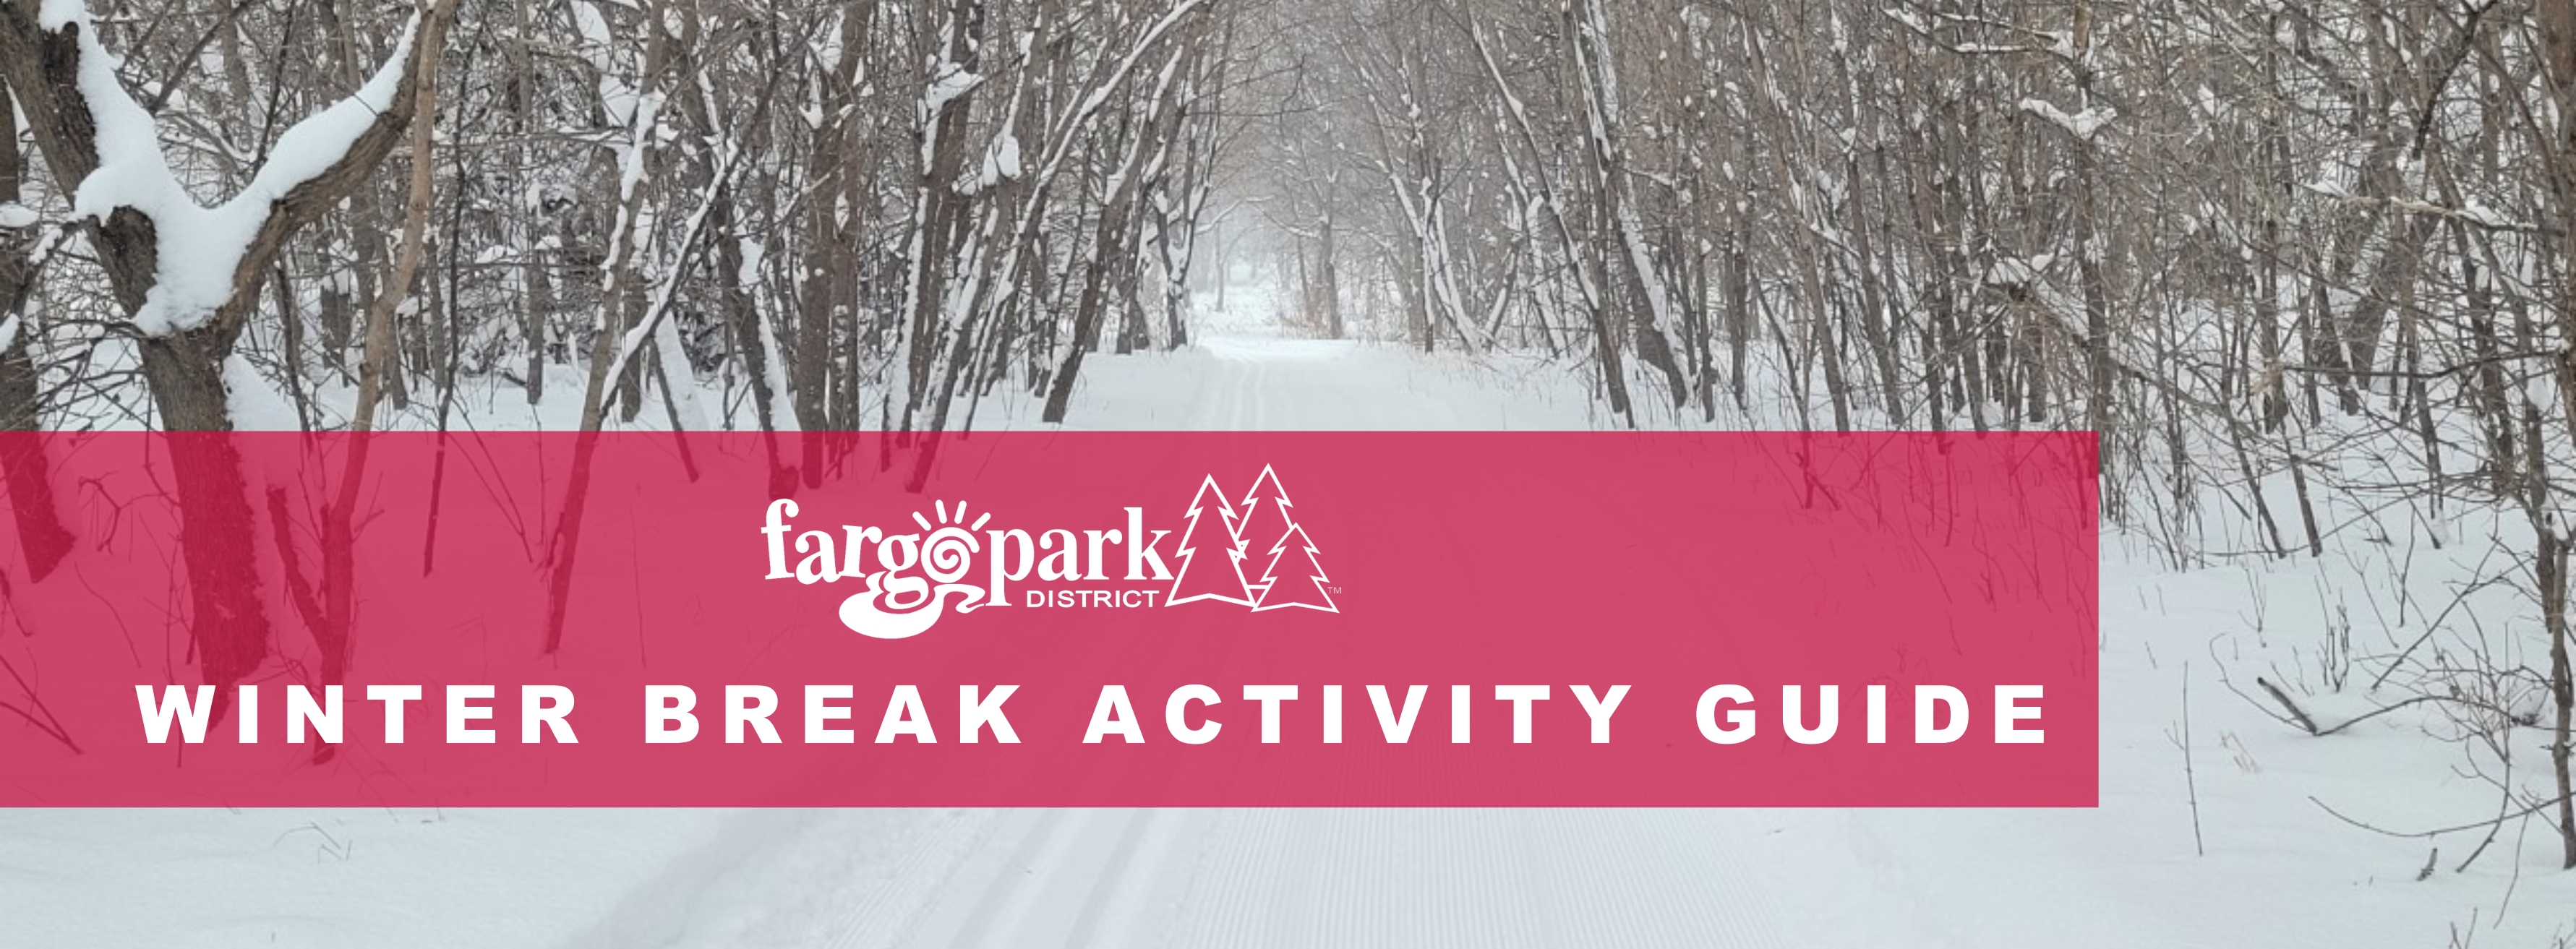 Fargo Park District Winter Break Activities Guide Fargo Parks